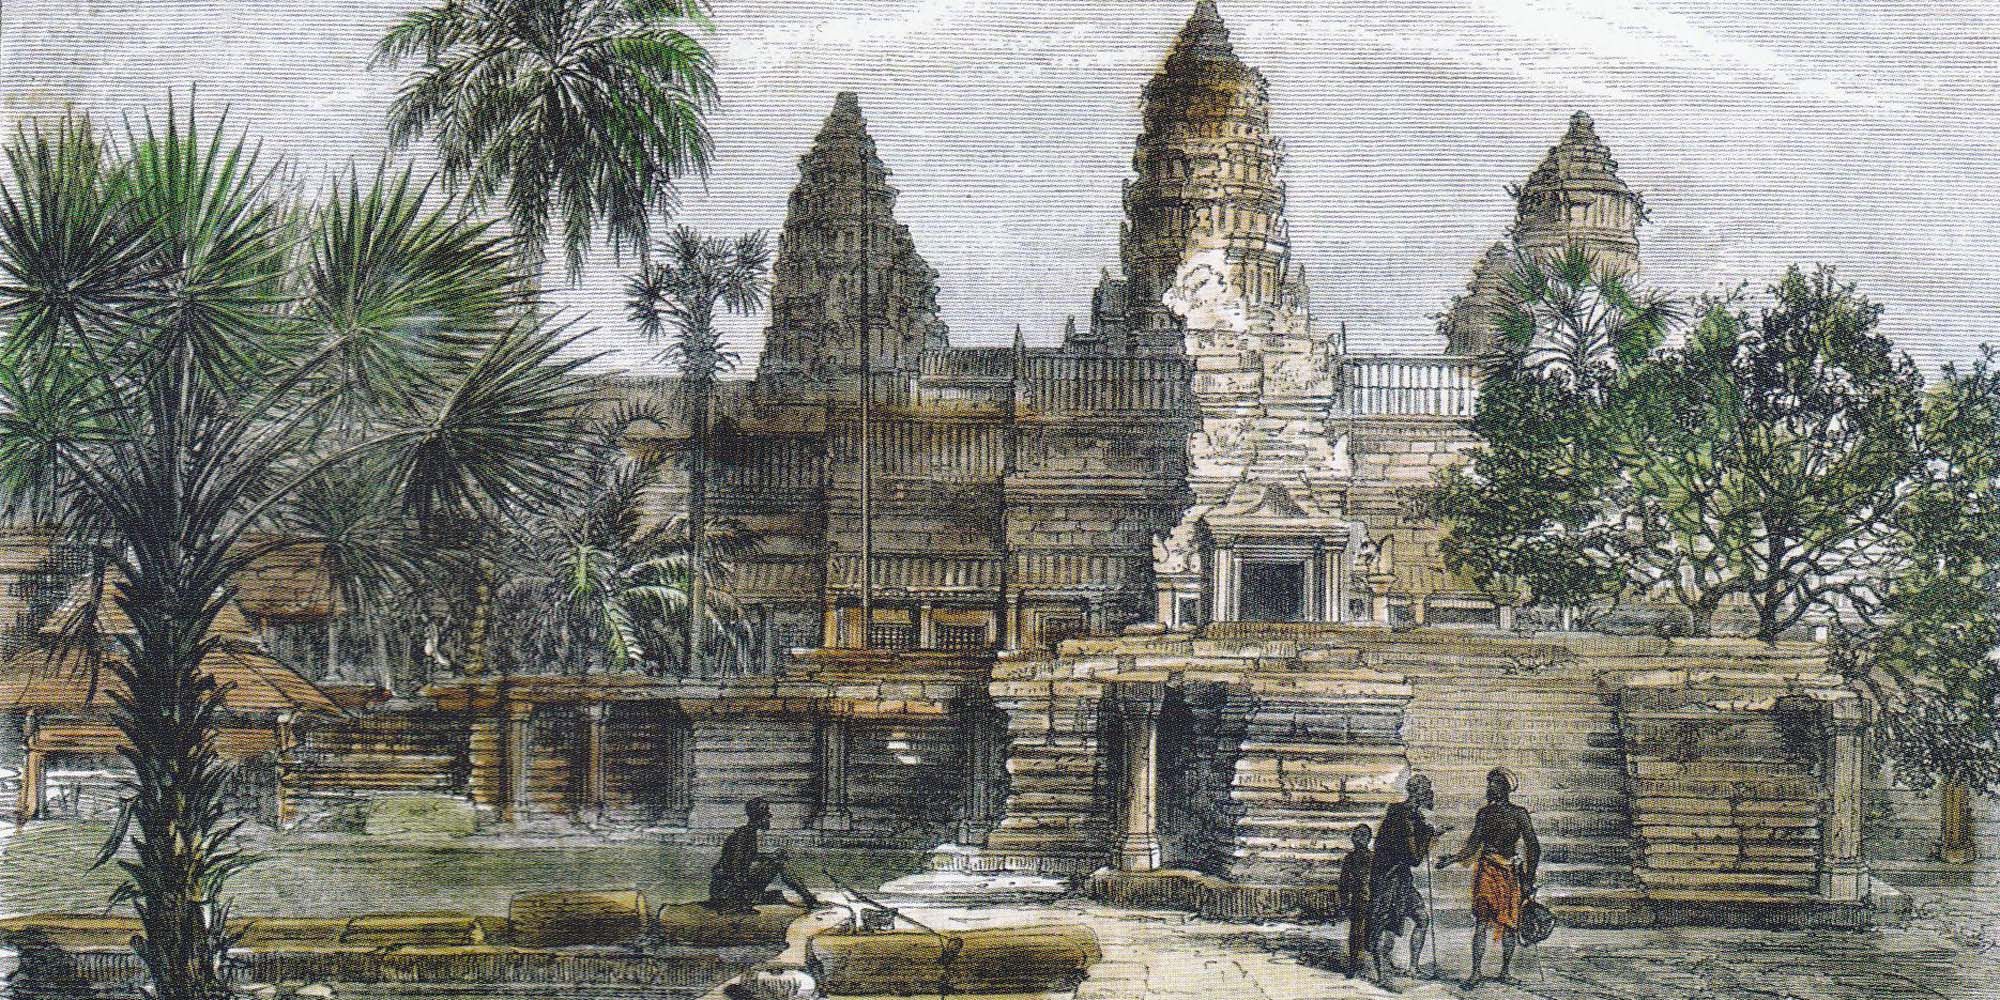 Как были раскрыты тайны Ангкора (фото)